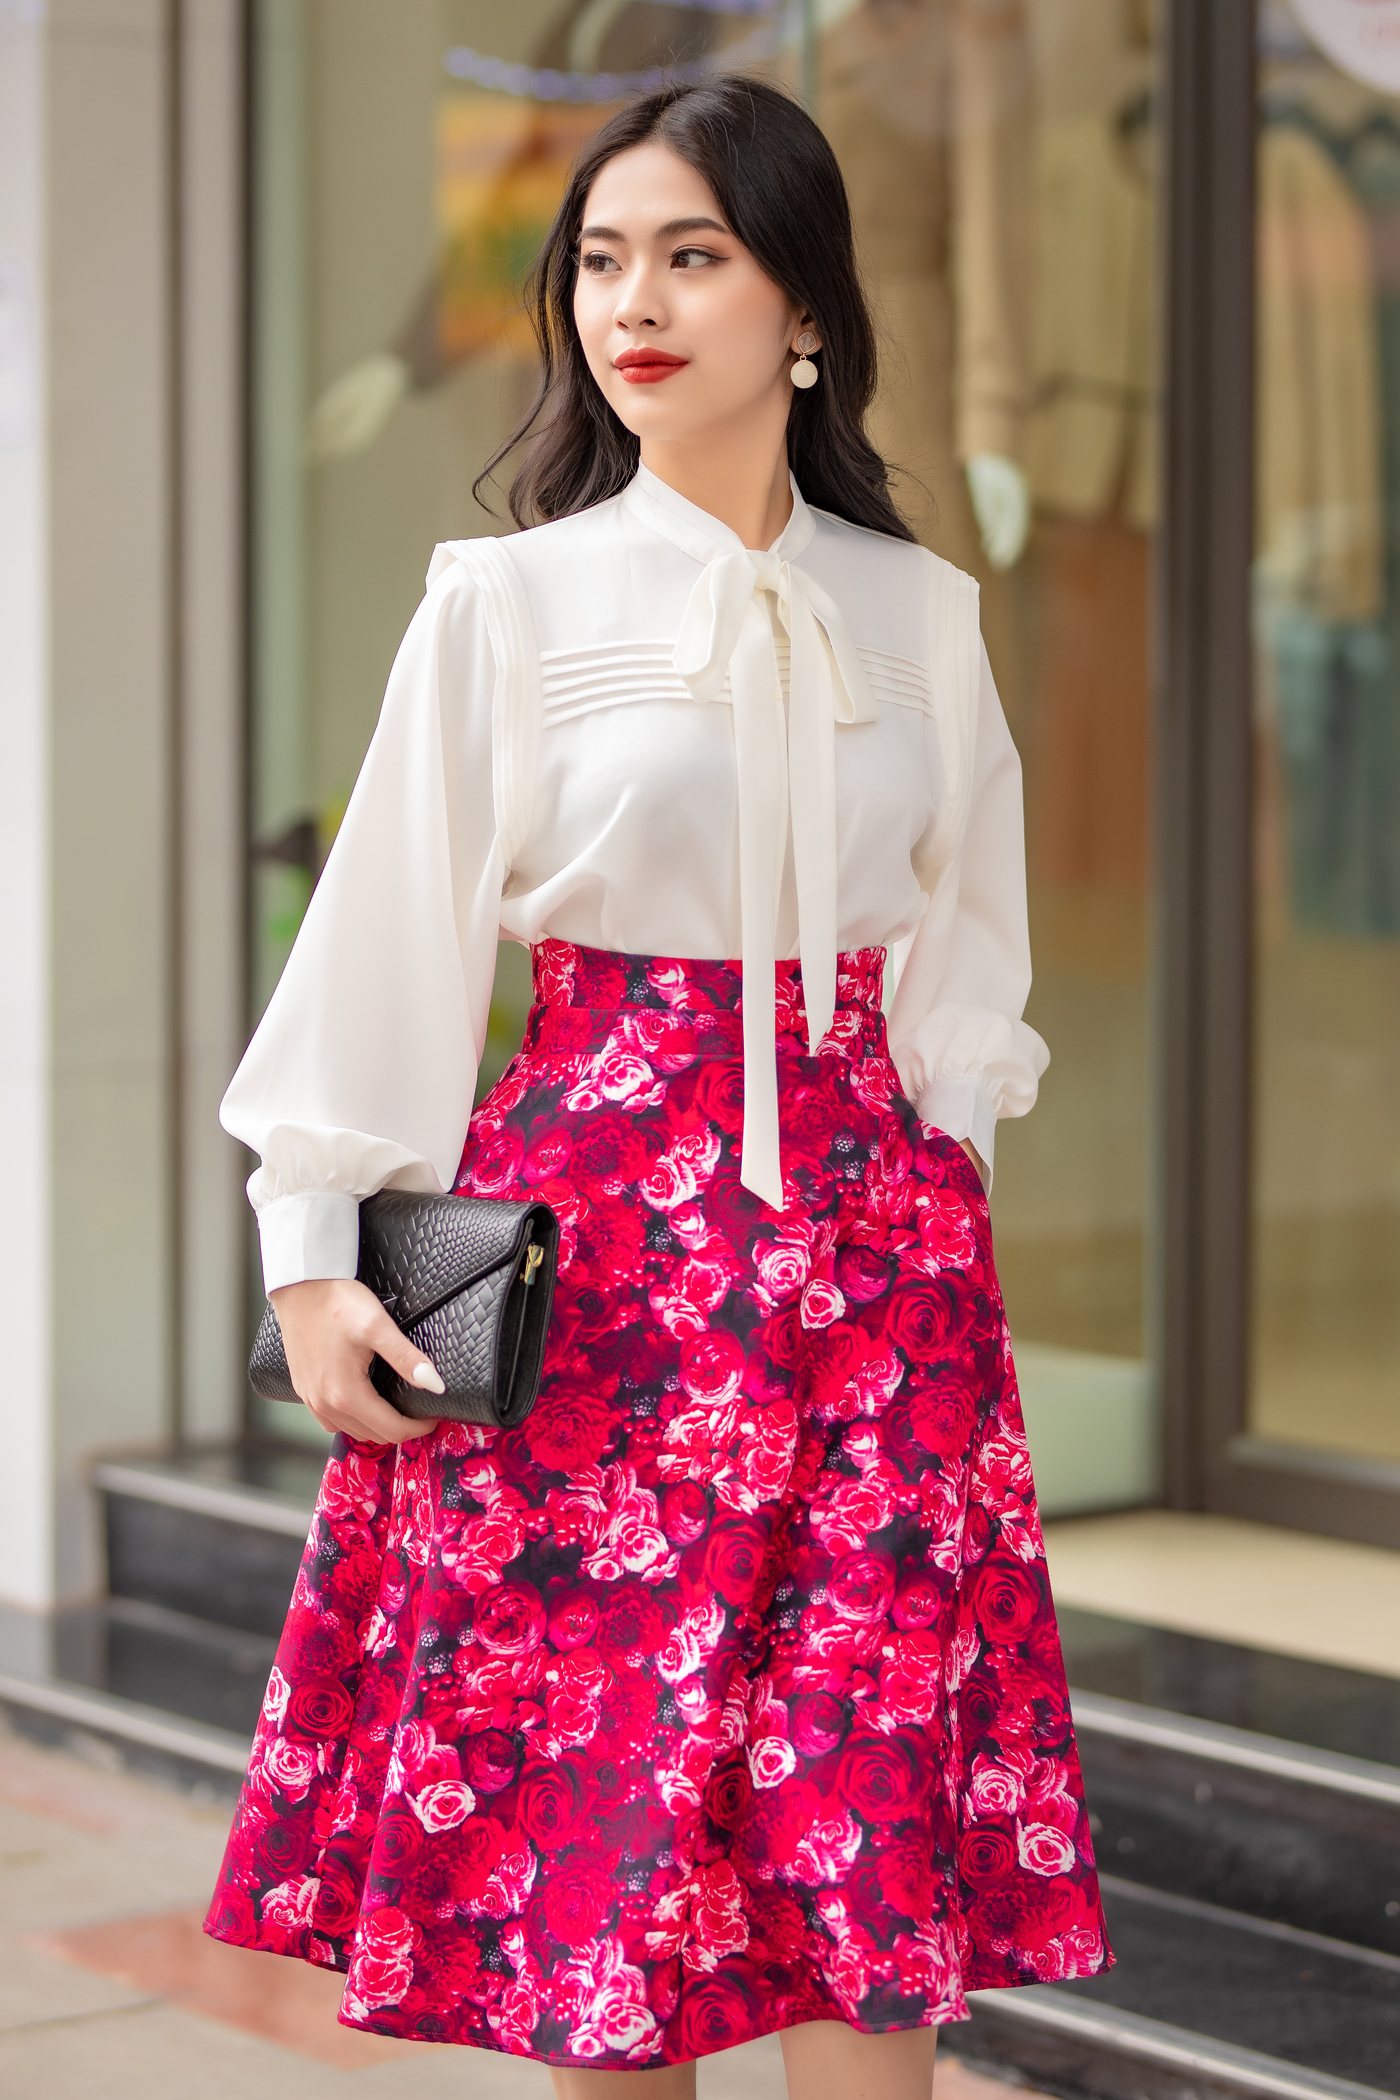 Chân váy xòe khóa đồng hoa hồng đỏ - Bloomie Skirt